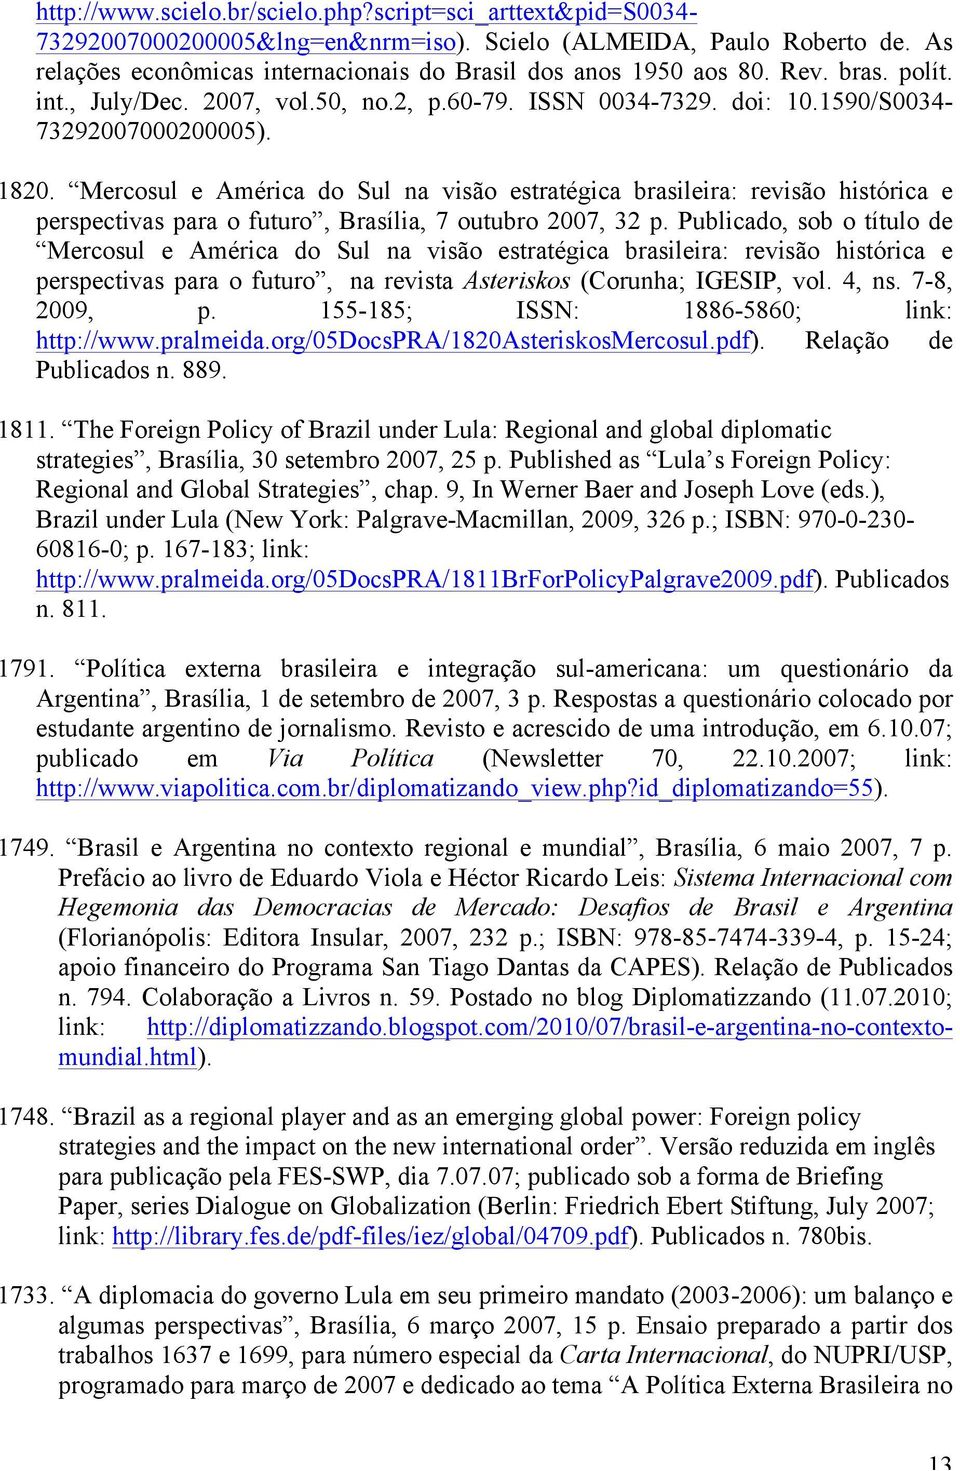 Mercosul e América do Sul na visão estratégica brasileira: revisão histórica e perspectivas para o futuro, Brasília, 7 outubro 2007, 32 p.